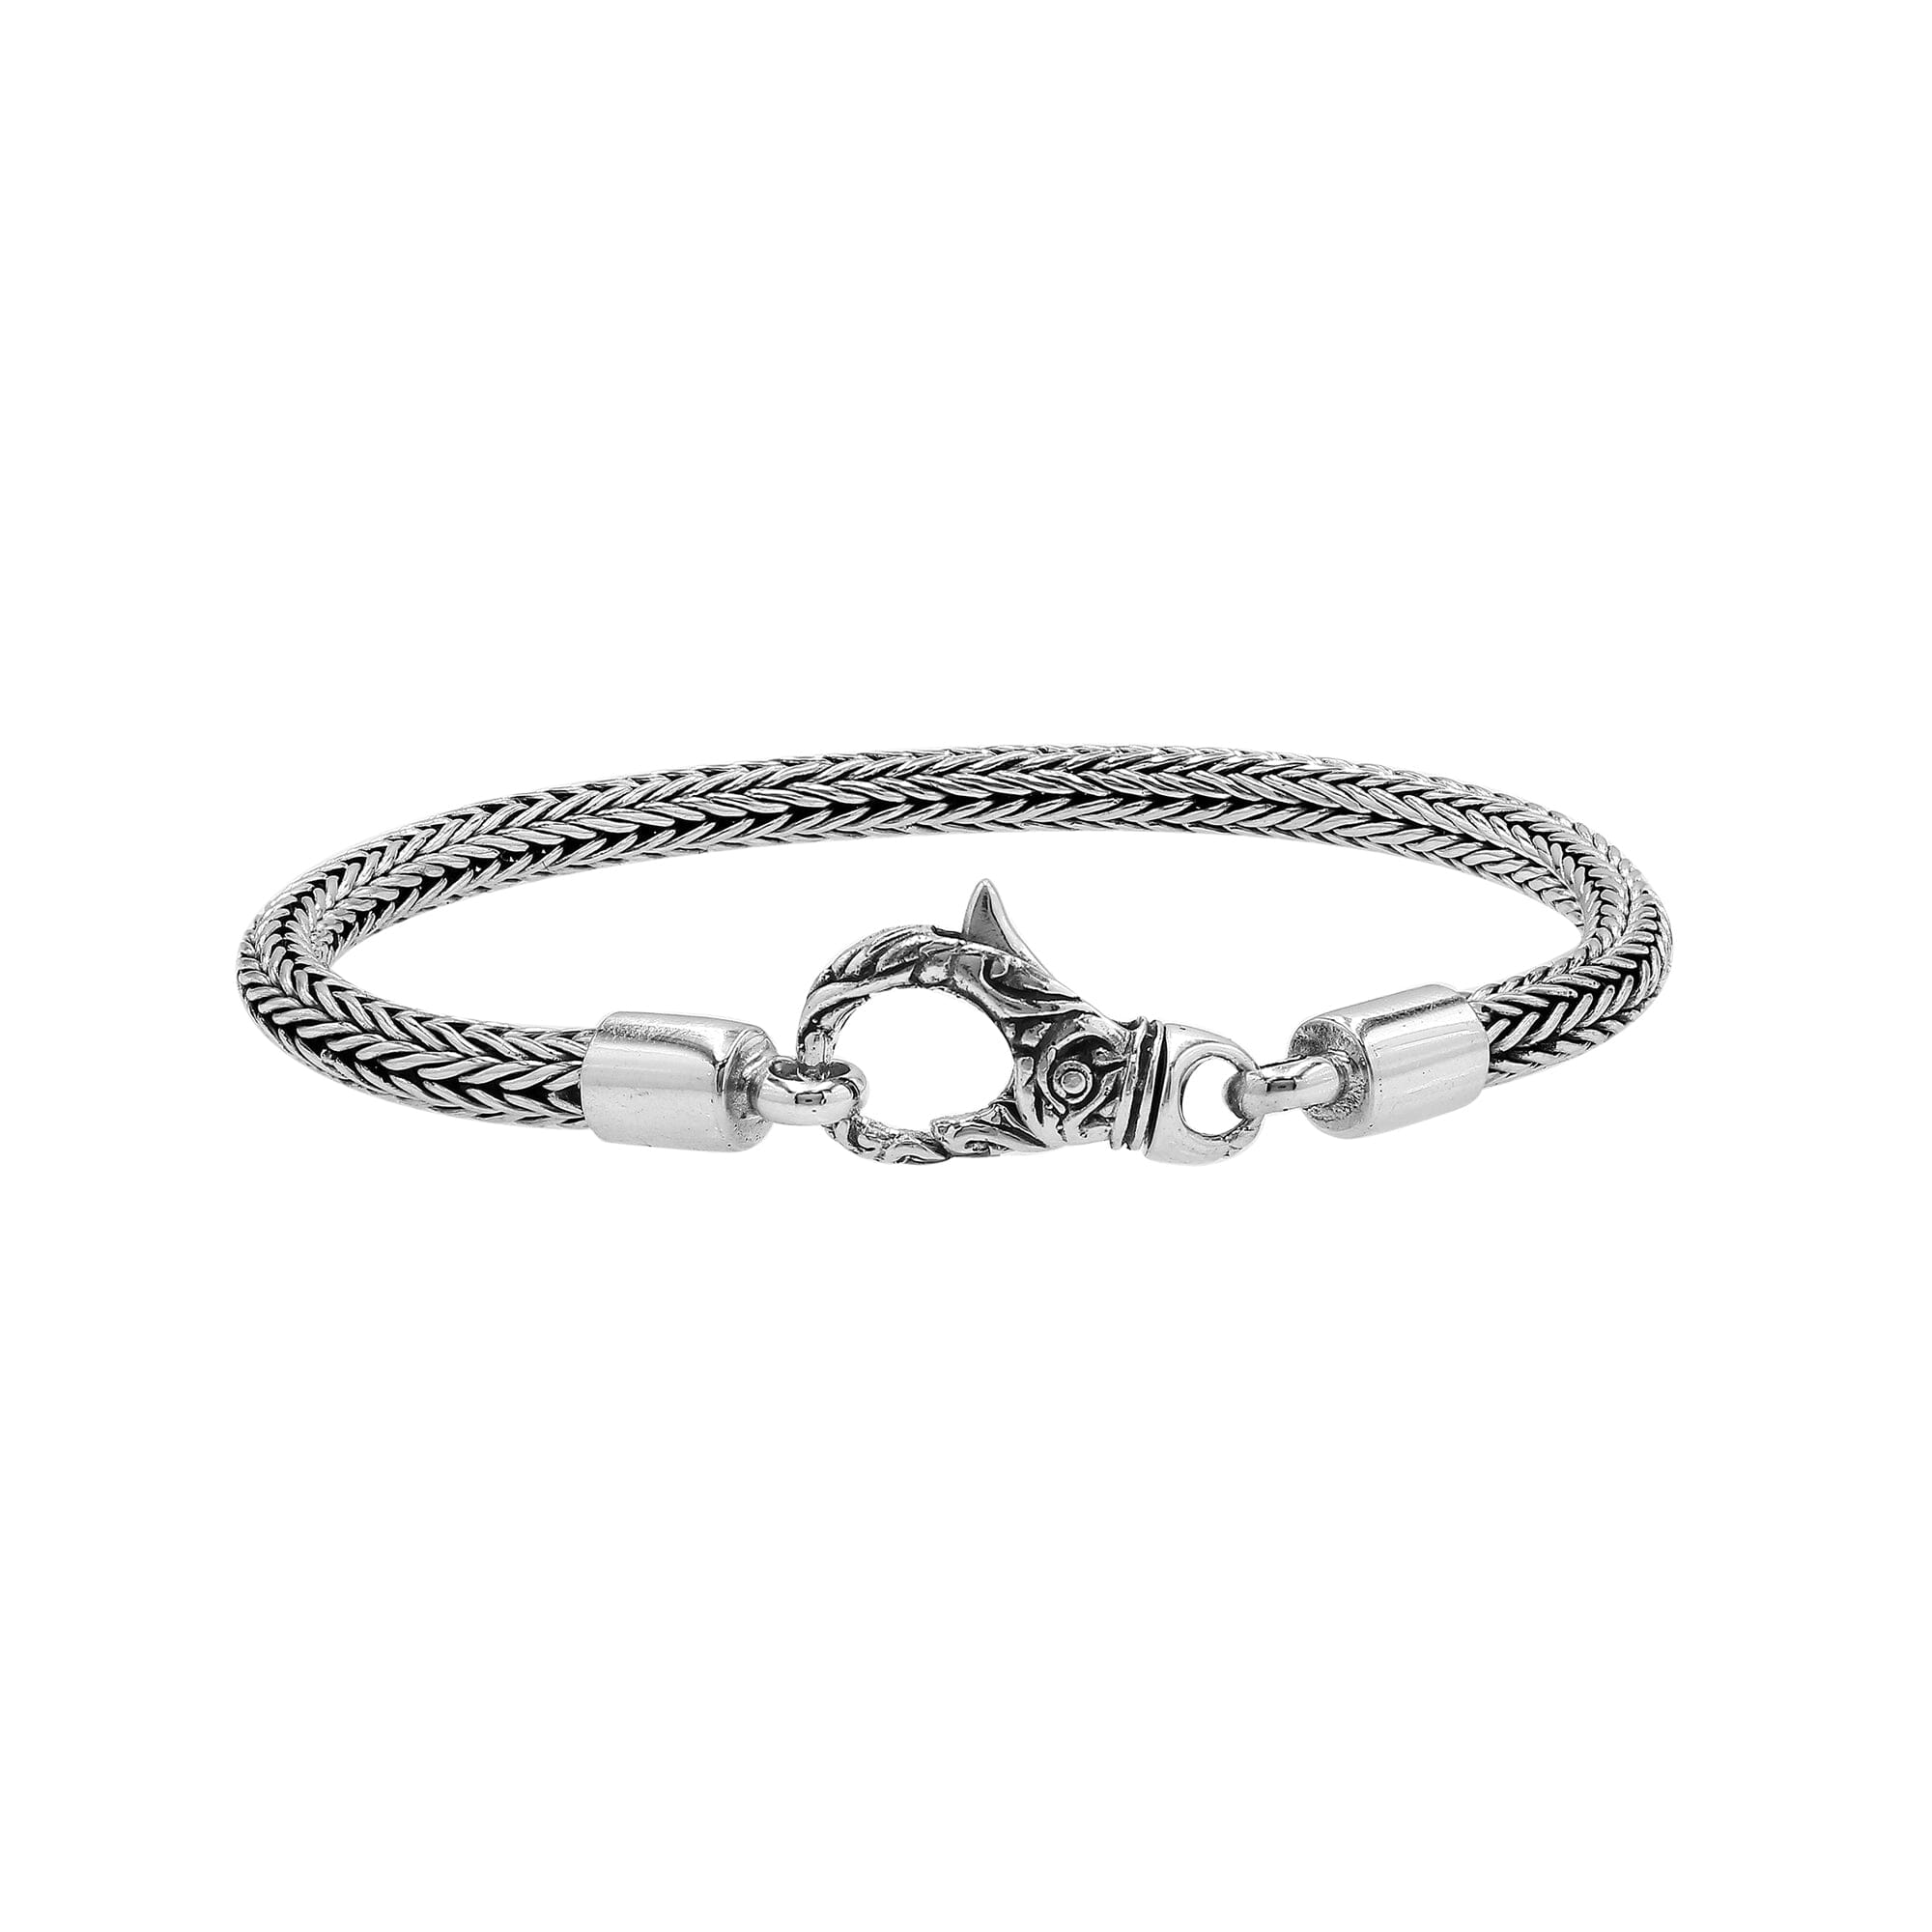 Bracelet - Women's Sterling Silver Delicate Cubic Zirconia Wavy Bracelet -  Adjustable 7-8 inch Dainty Tennis Bracelet – Blingschlingers Jewelry